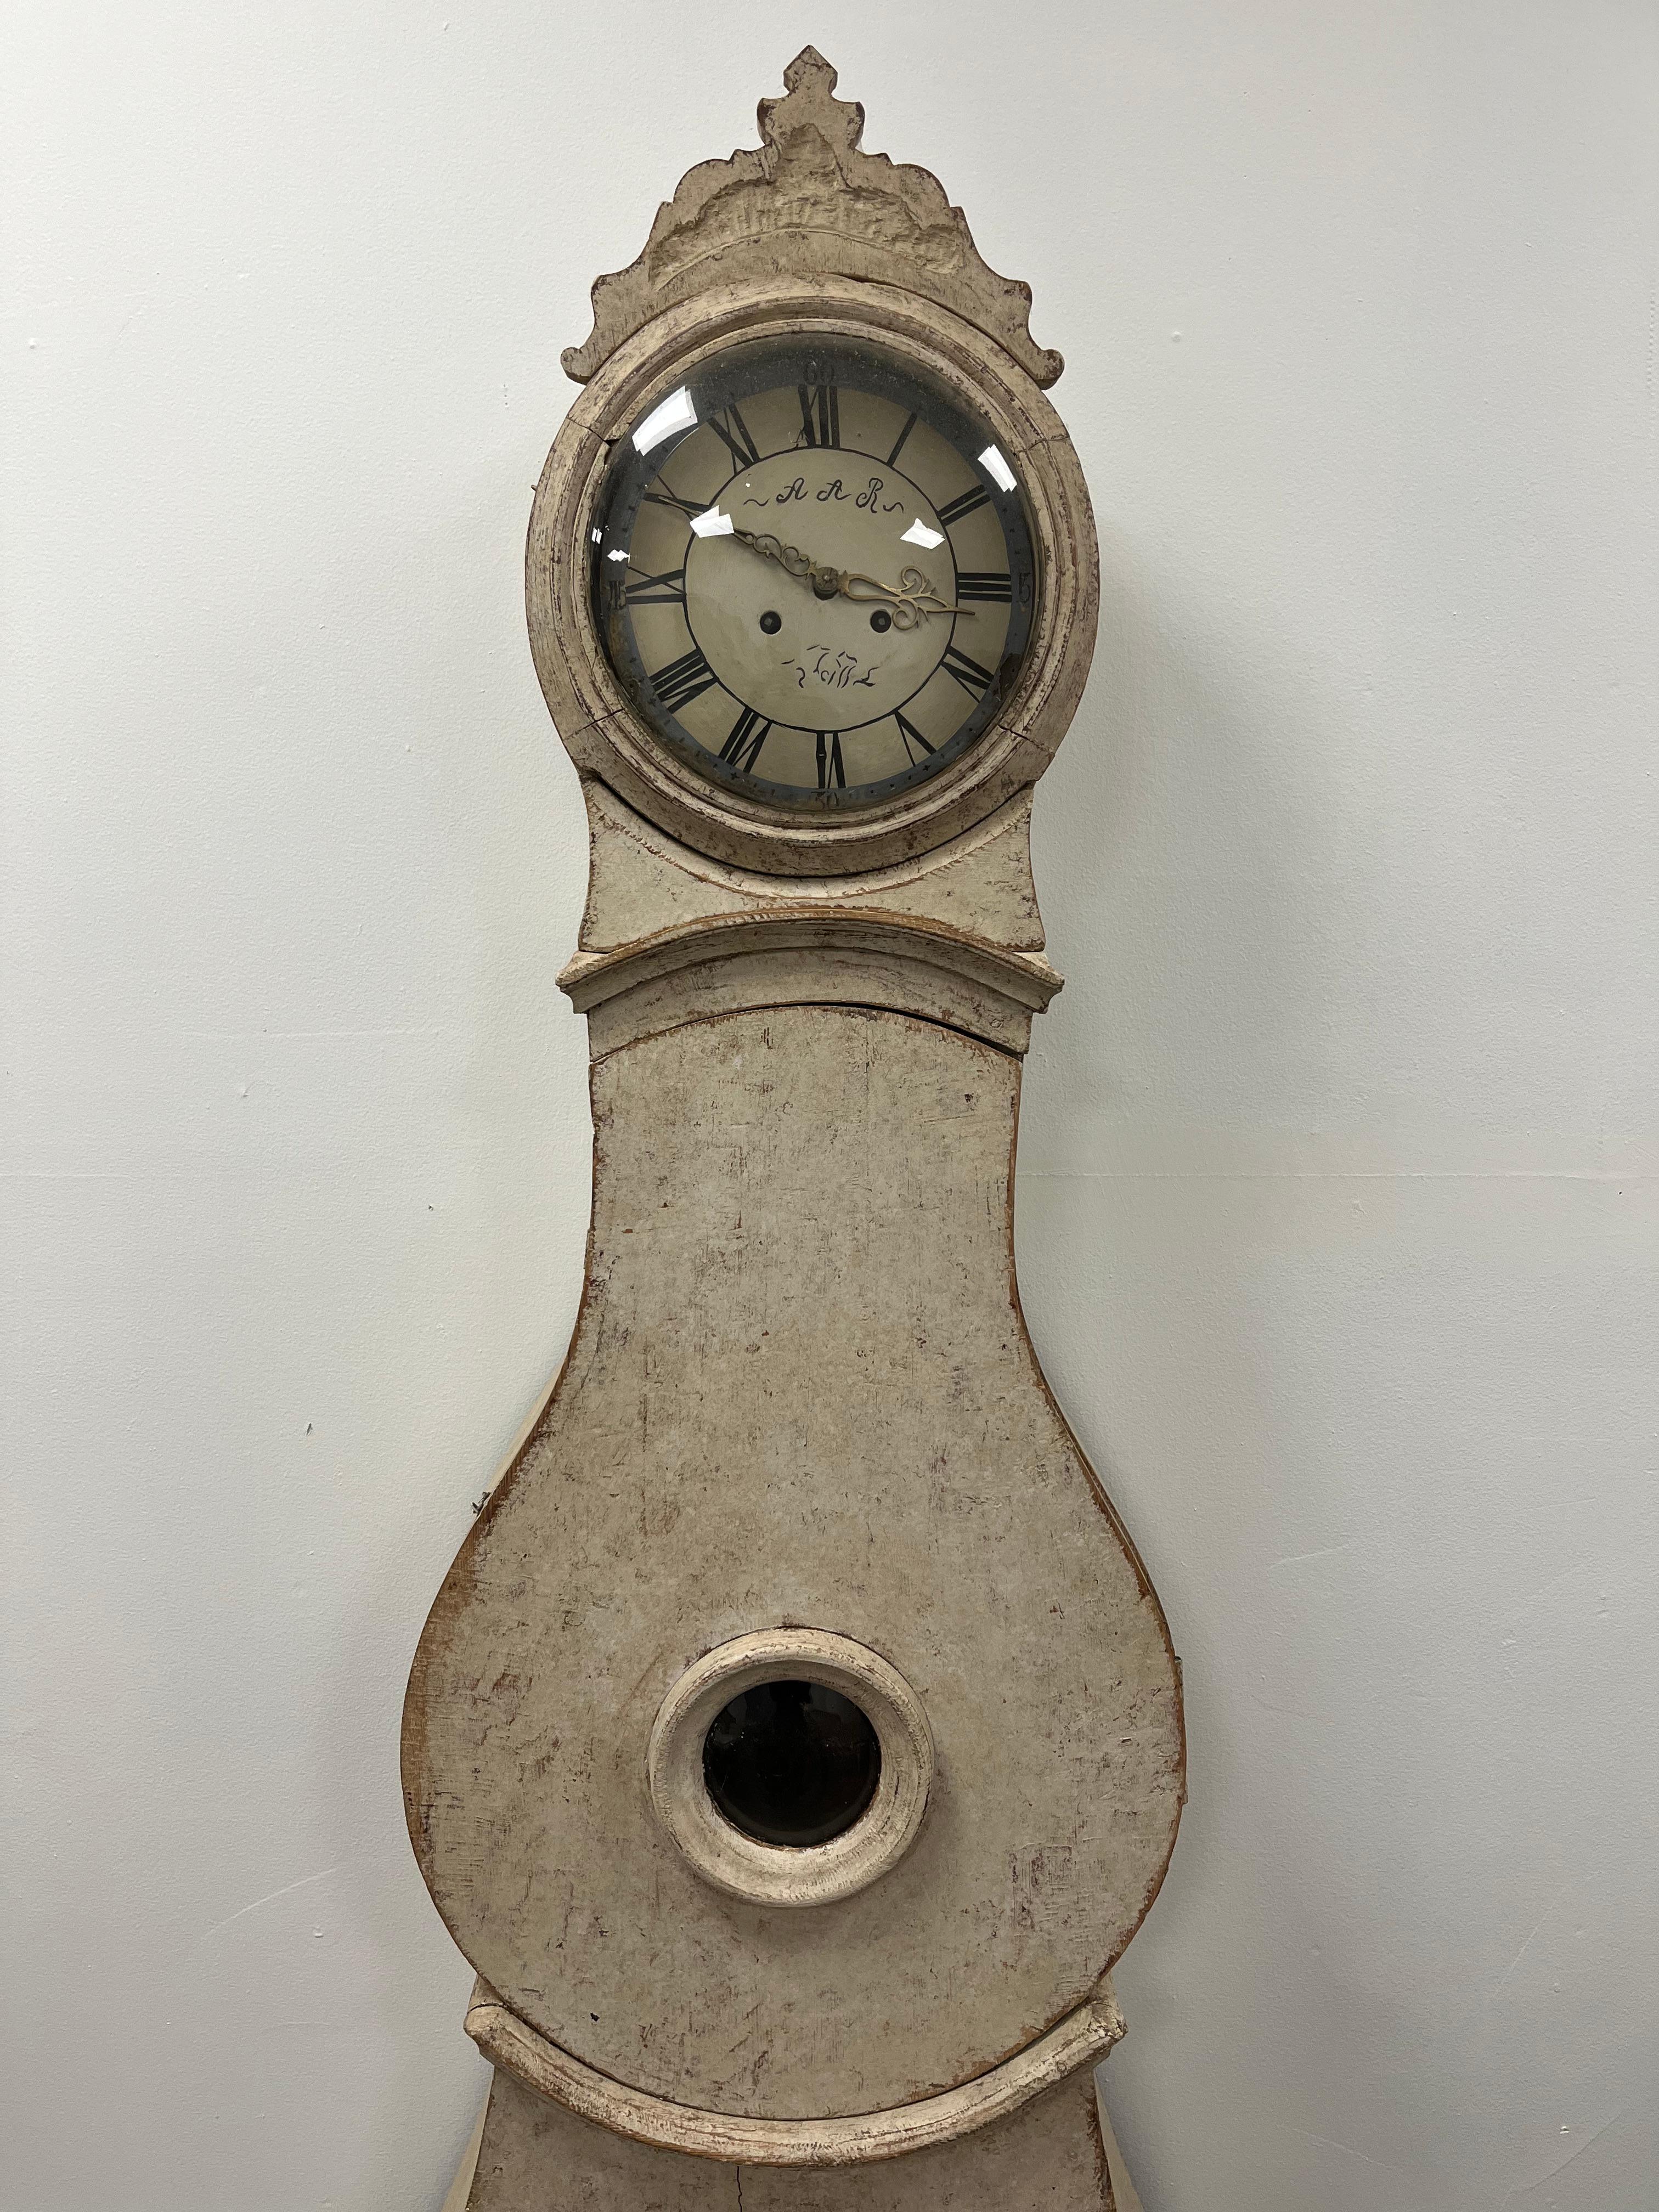 Une horloge suédoise unique en son genre, repeinte en couleur crème. L'horloge est vendue en tant que pièce décorative, sans garantie mécanique. Les poids (mais pas le pendule ni la clé) sont inclus.
